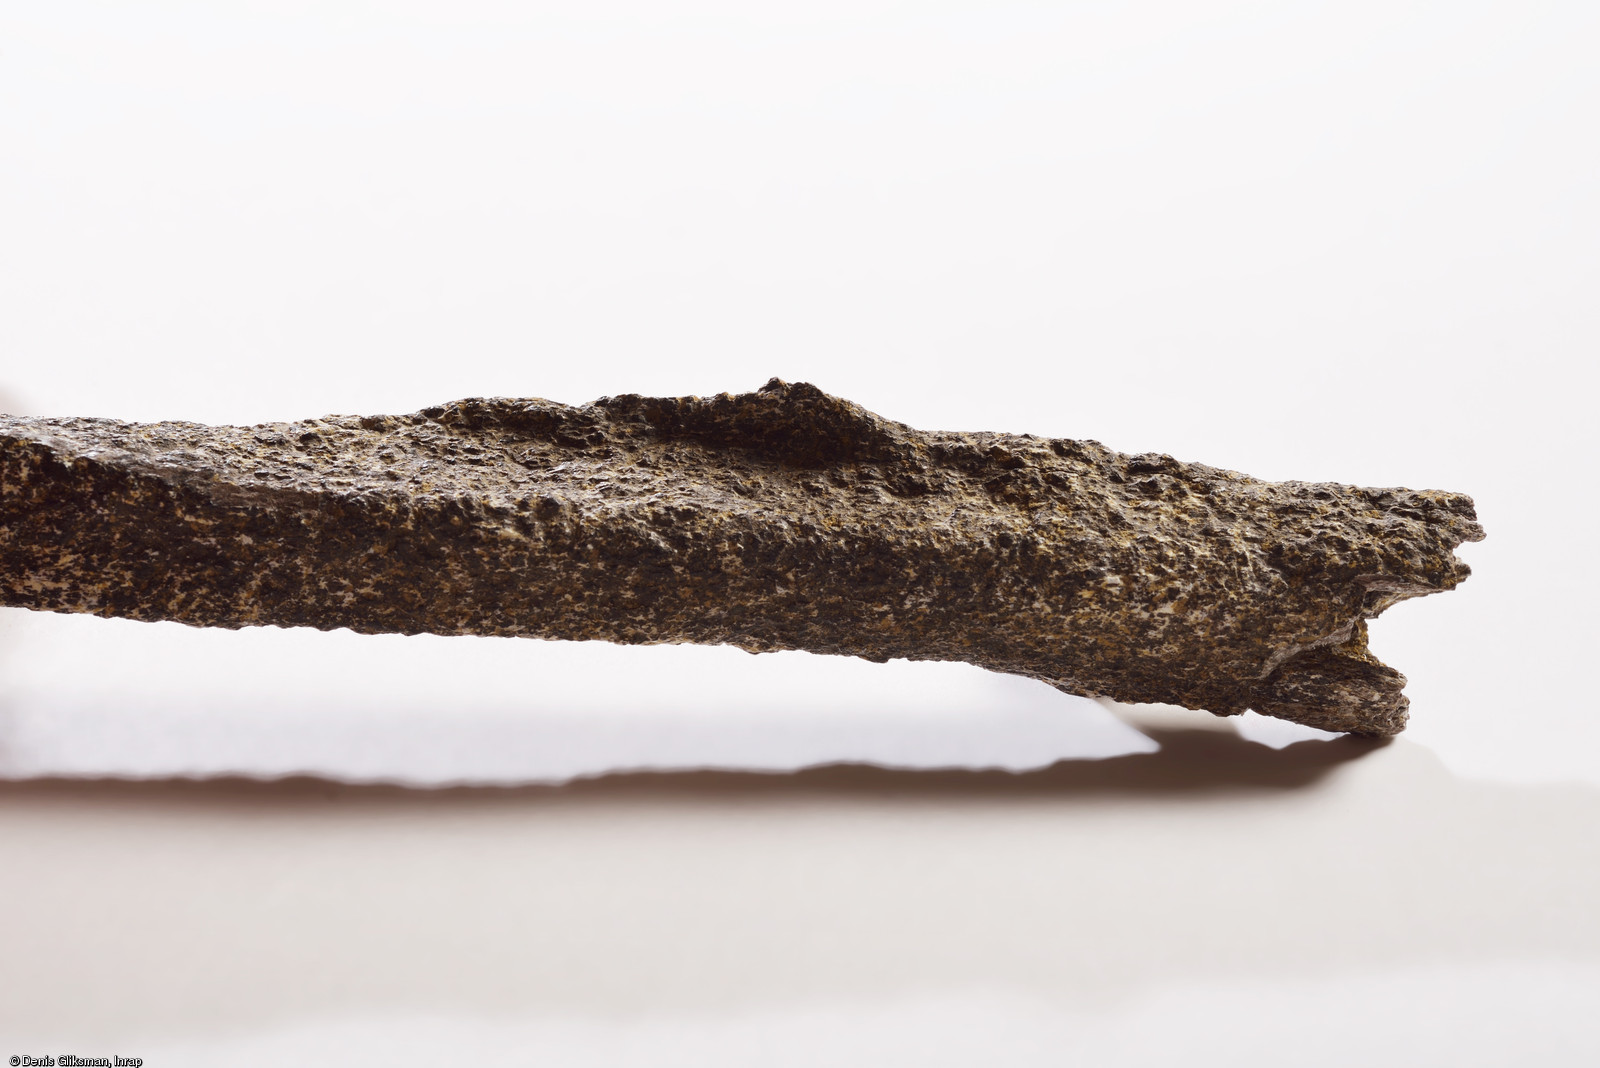 Détail de la trace d'enthésopathie de l’os du bras gauche d'un pré-Néandertalien retrouvé sur le site de Tourville-la-Rivière (Seine-Maritime), en 2010.  L'enthésopathie est une anomalie (crête inhabituelle à l'endroit de l'attache du muscle deltoïde post